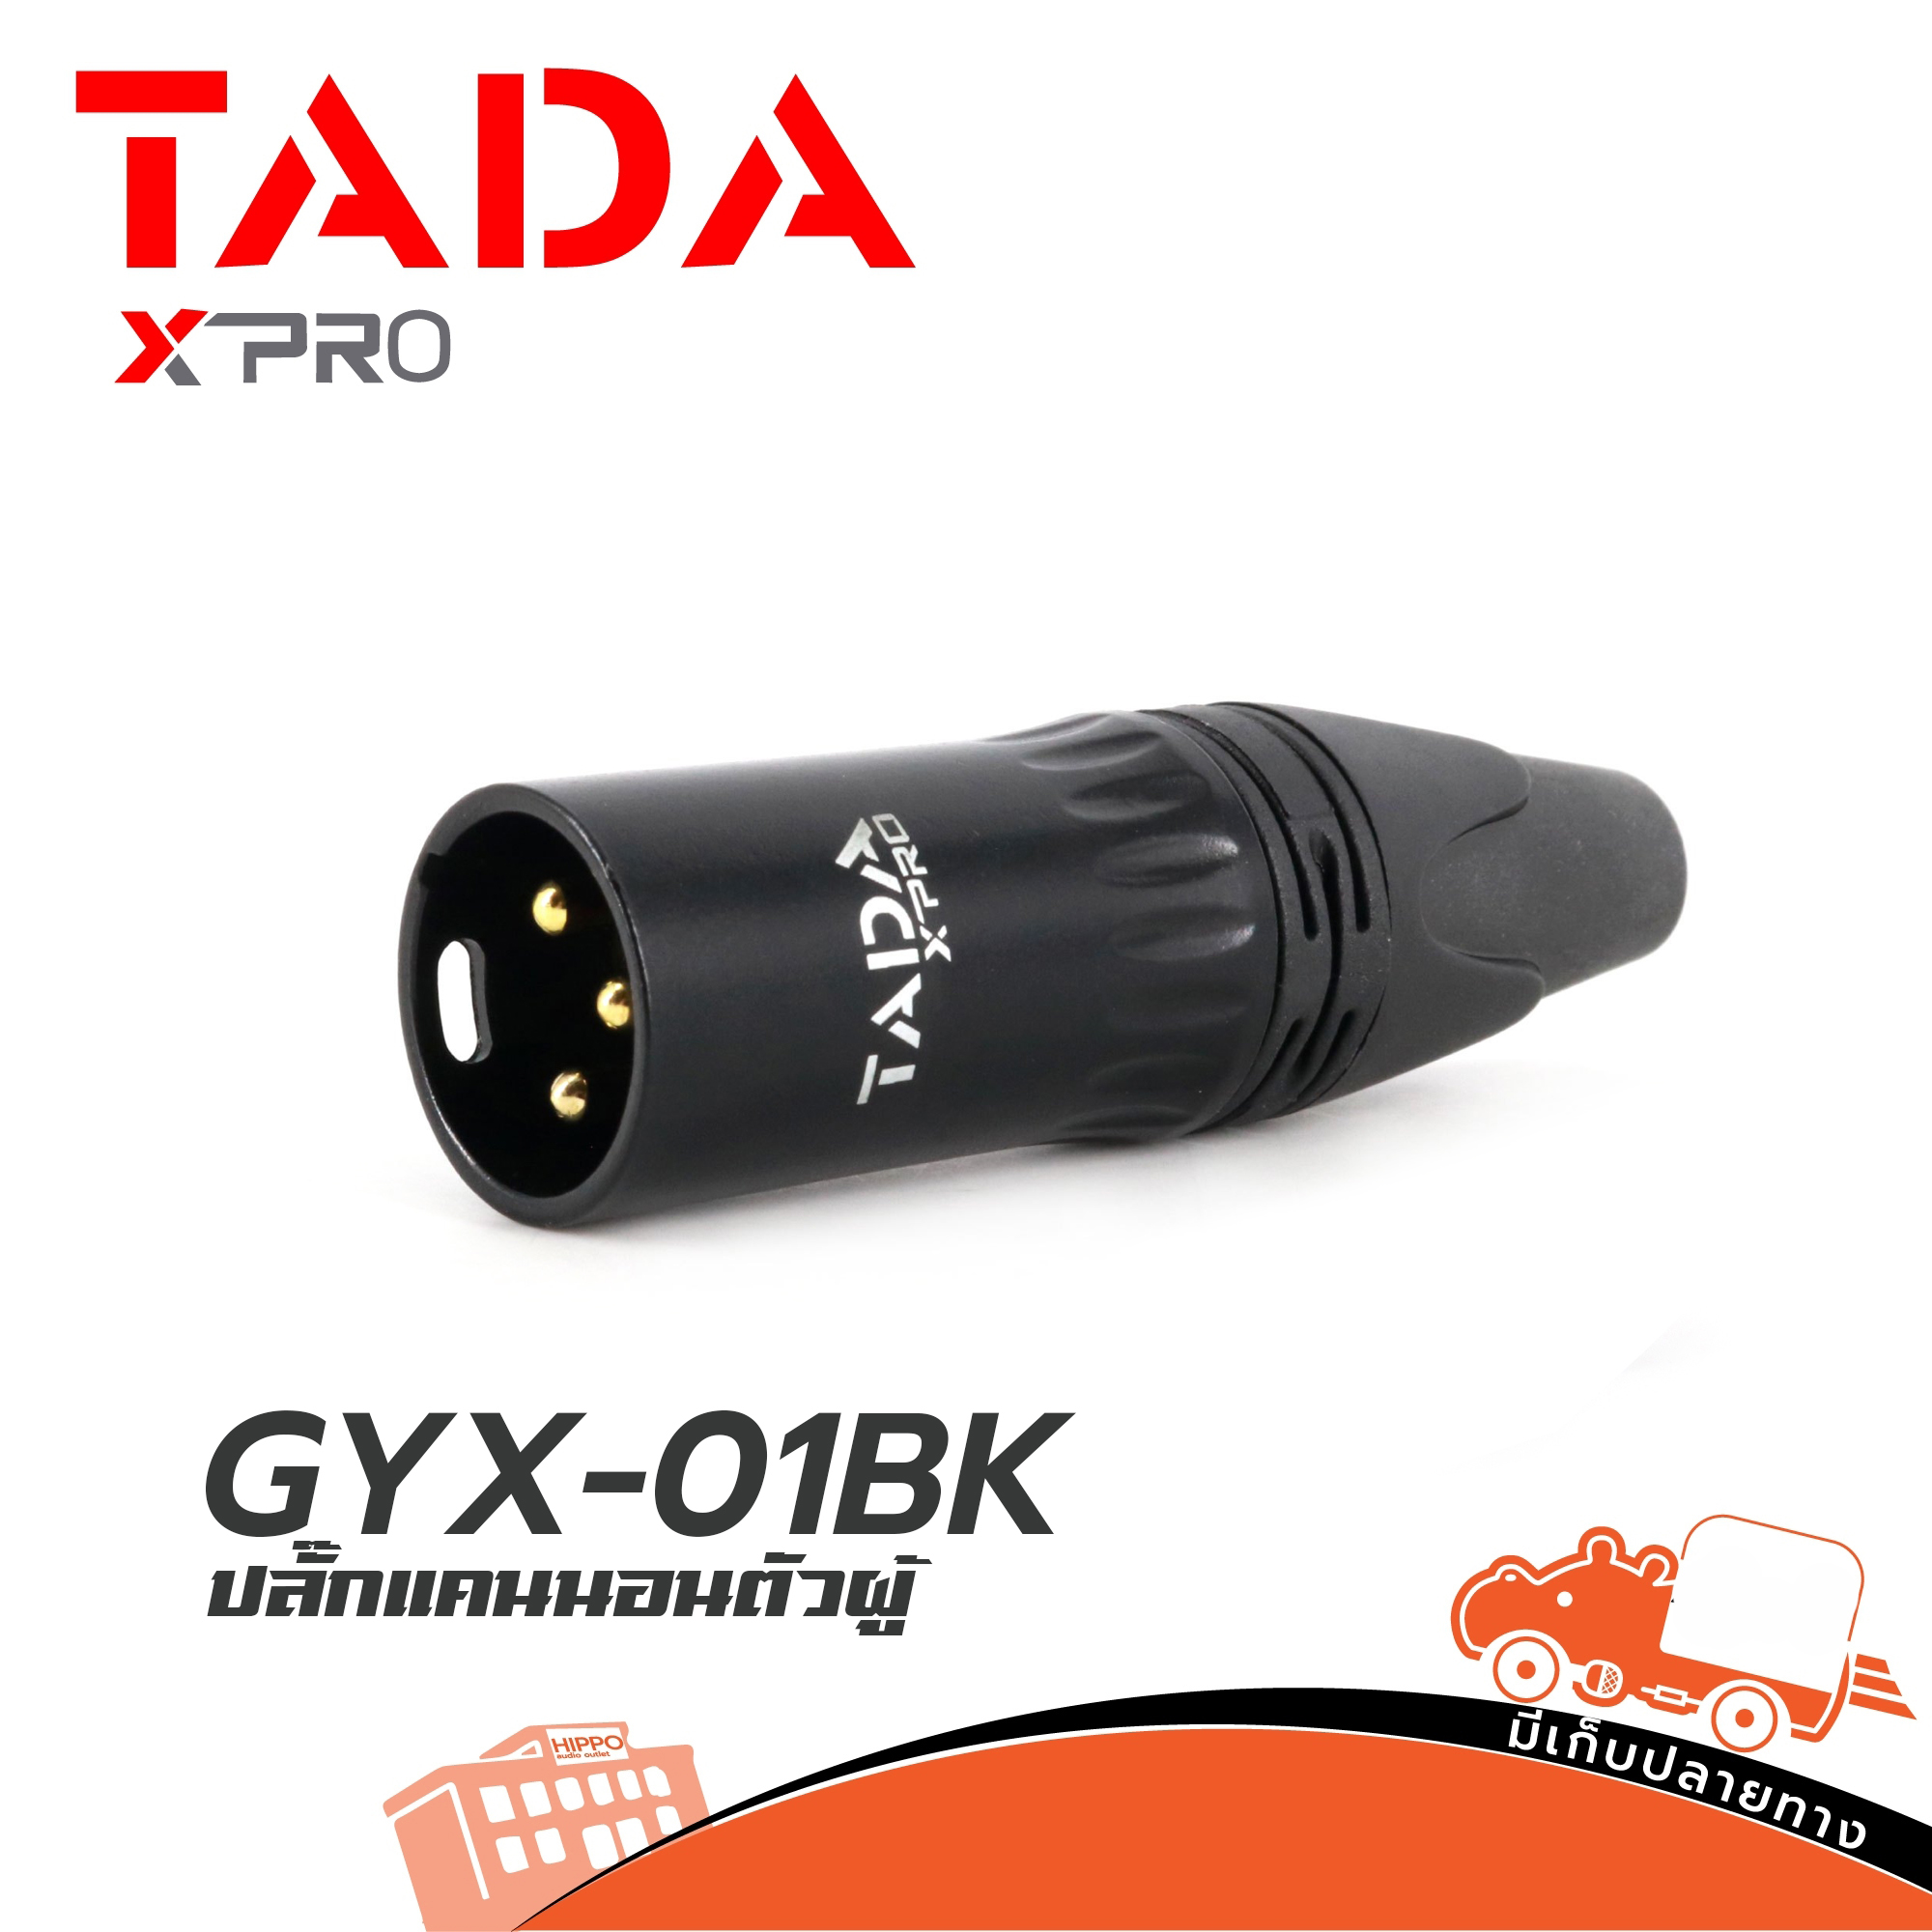 ปลั๊ก XLR TADA รุ่น GYX 01 BK แคนนอล ตัวผู้ แข็งแรง ทนทาน คุณภาพ มาตรฐาน (แพ็ค 1 ตัว) ฮิปโป ออดิโอ Hippo Audio